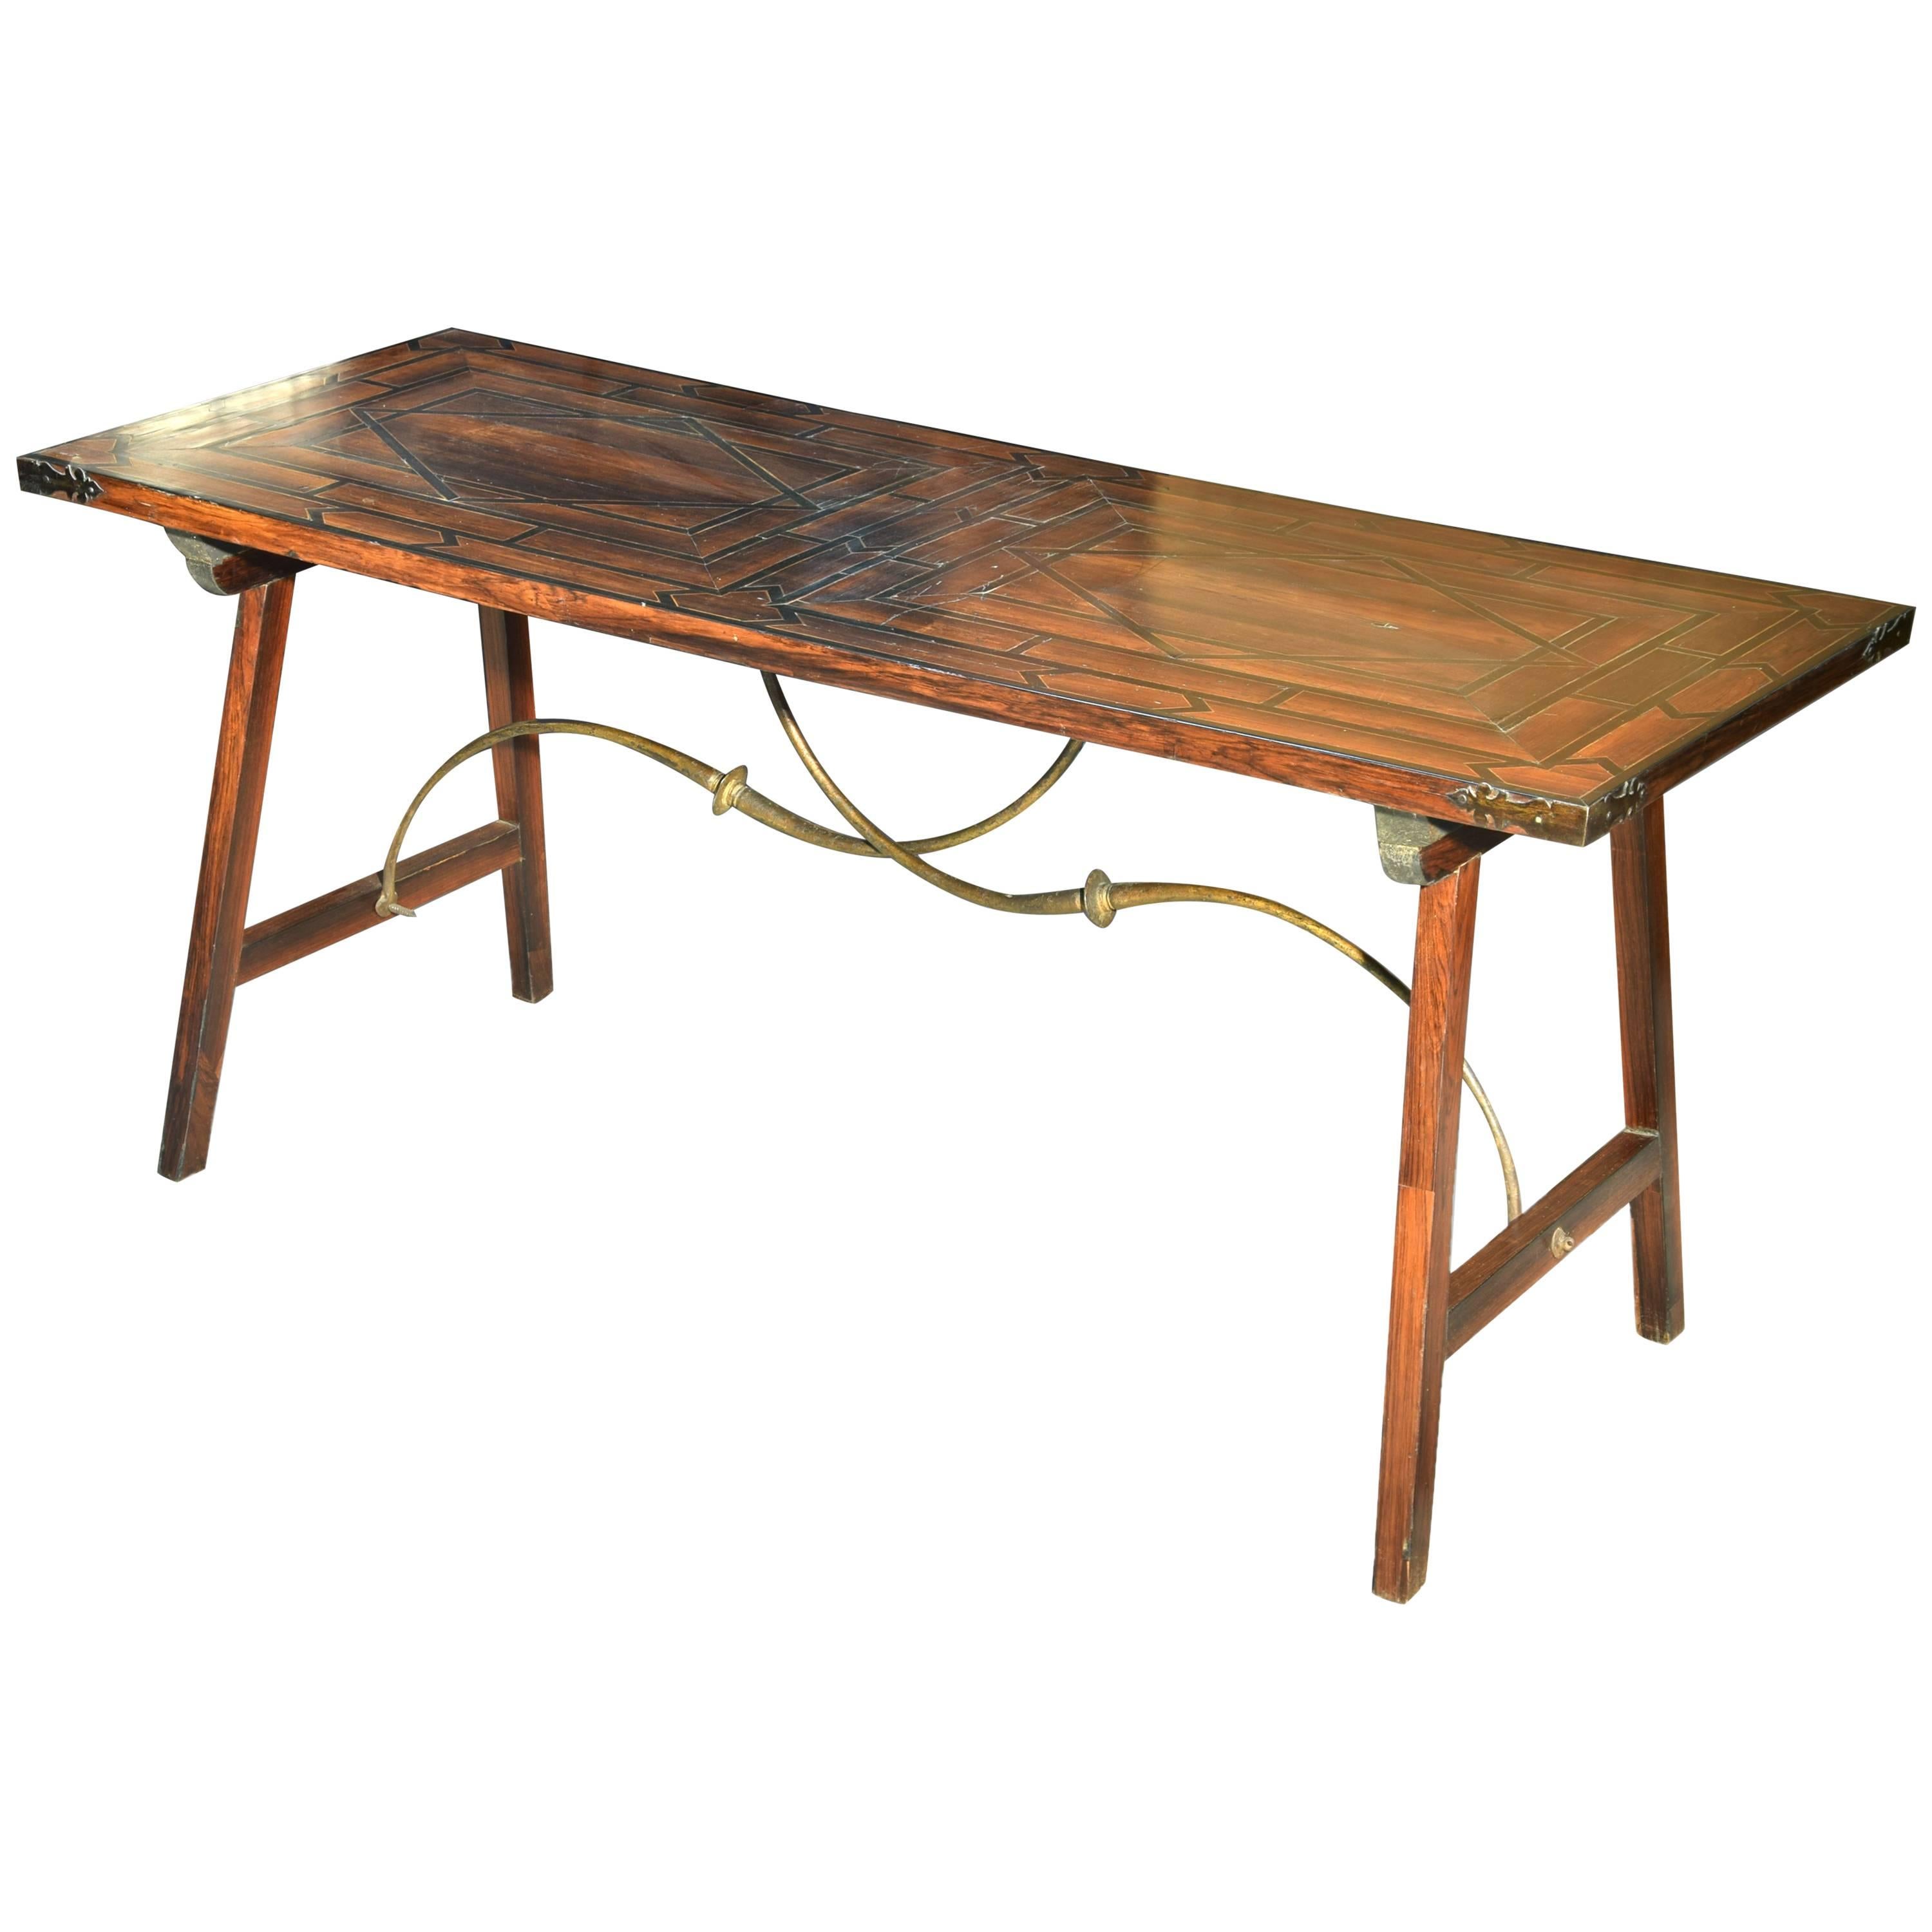 Table pour bureau espagnol, bois de rose, bois et fer forgé, Espagne, 18ème siècle